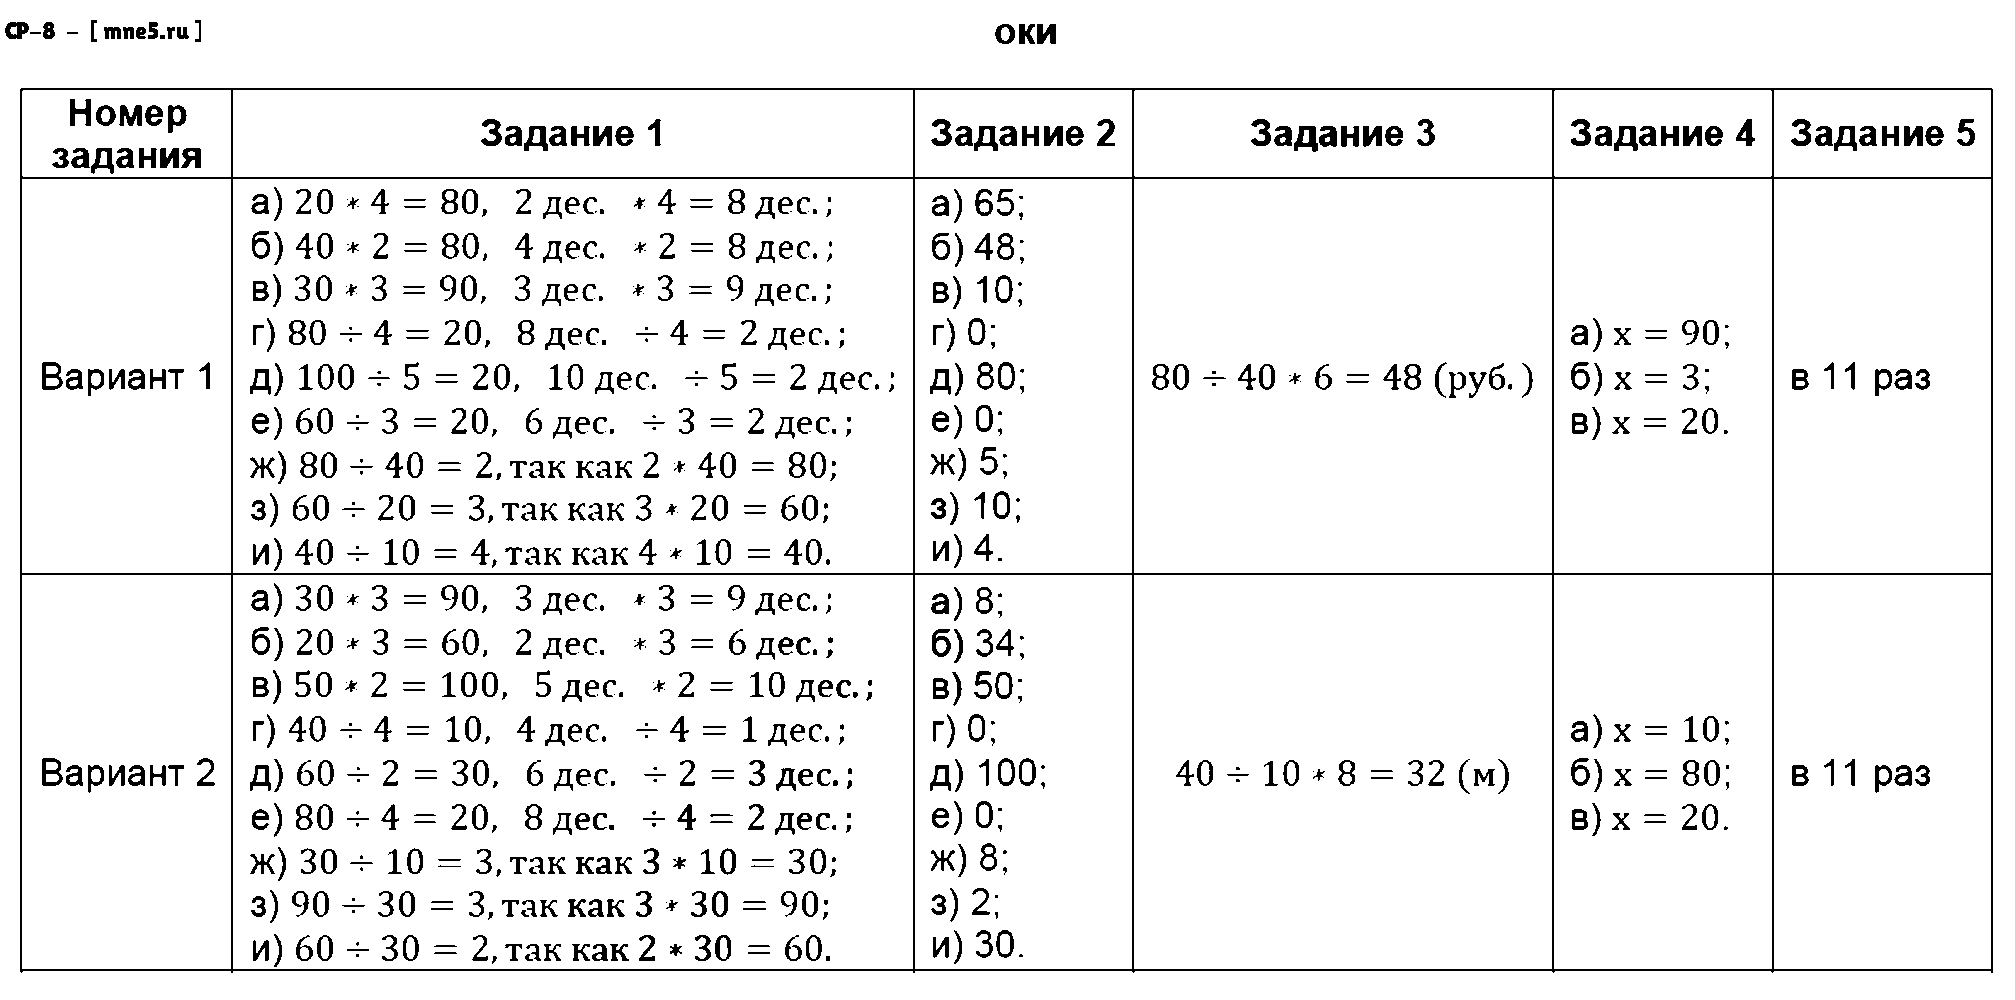 ГДЗ Математика 3 класс - СР-8